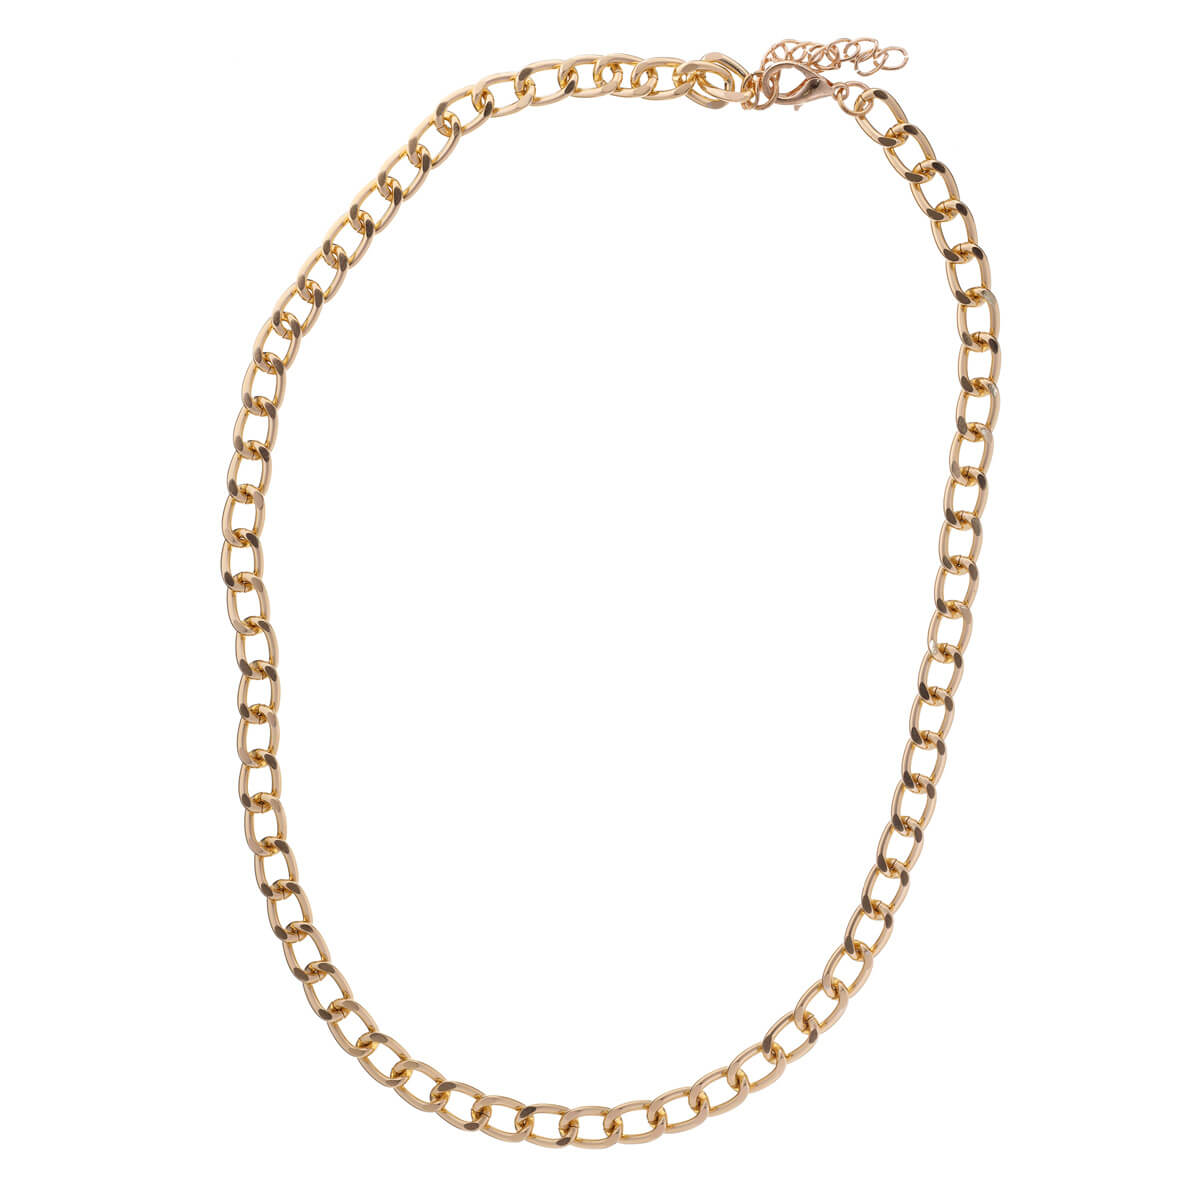 Armor chain necklace + bracelet